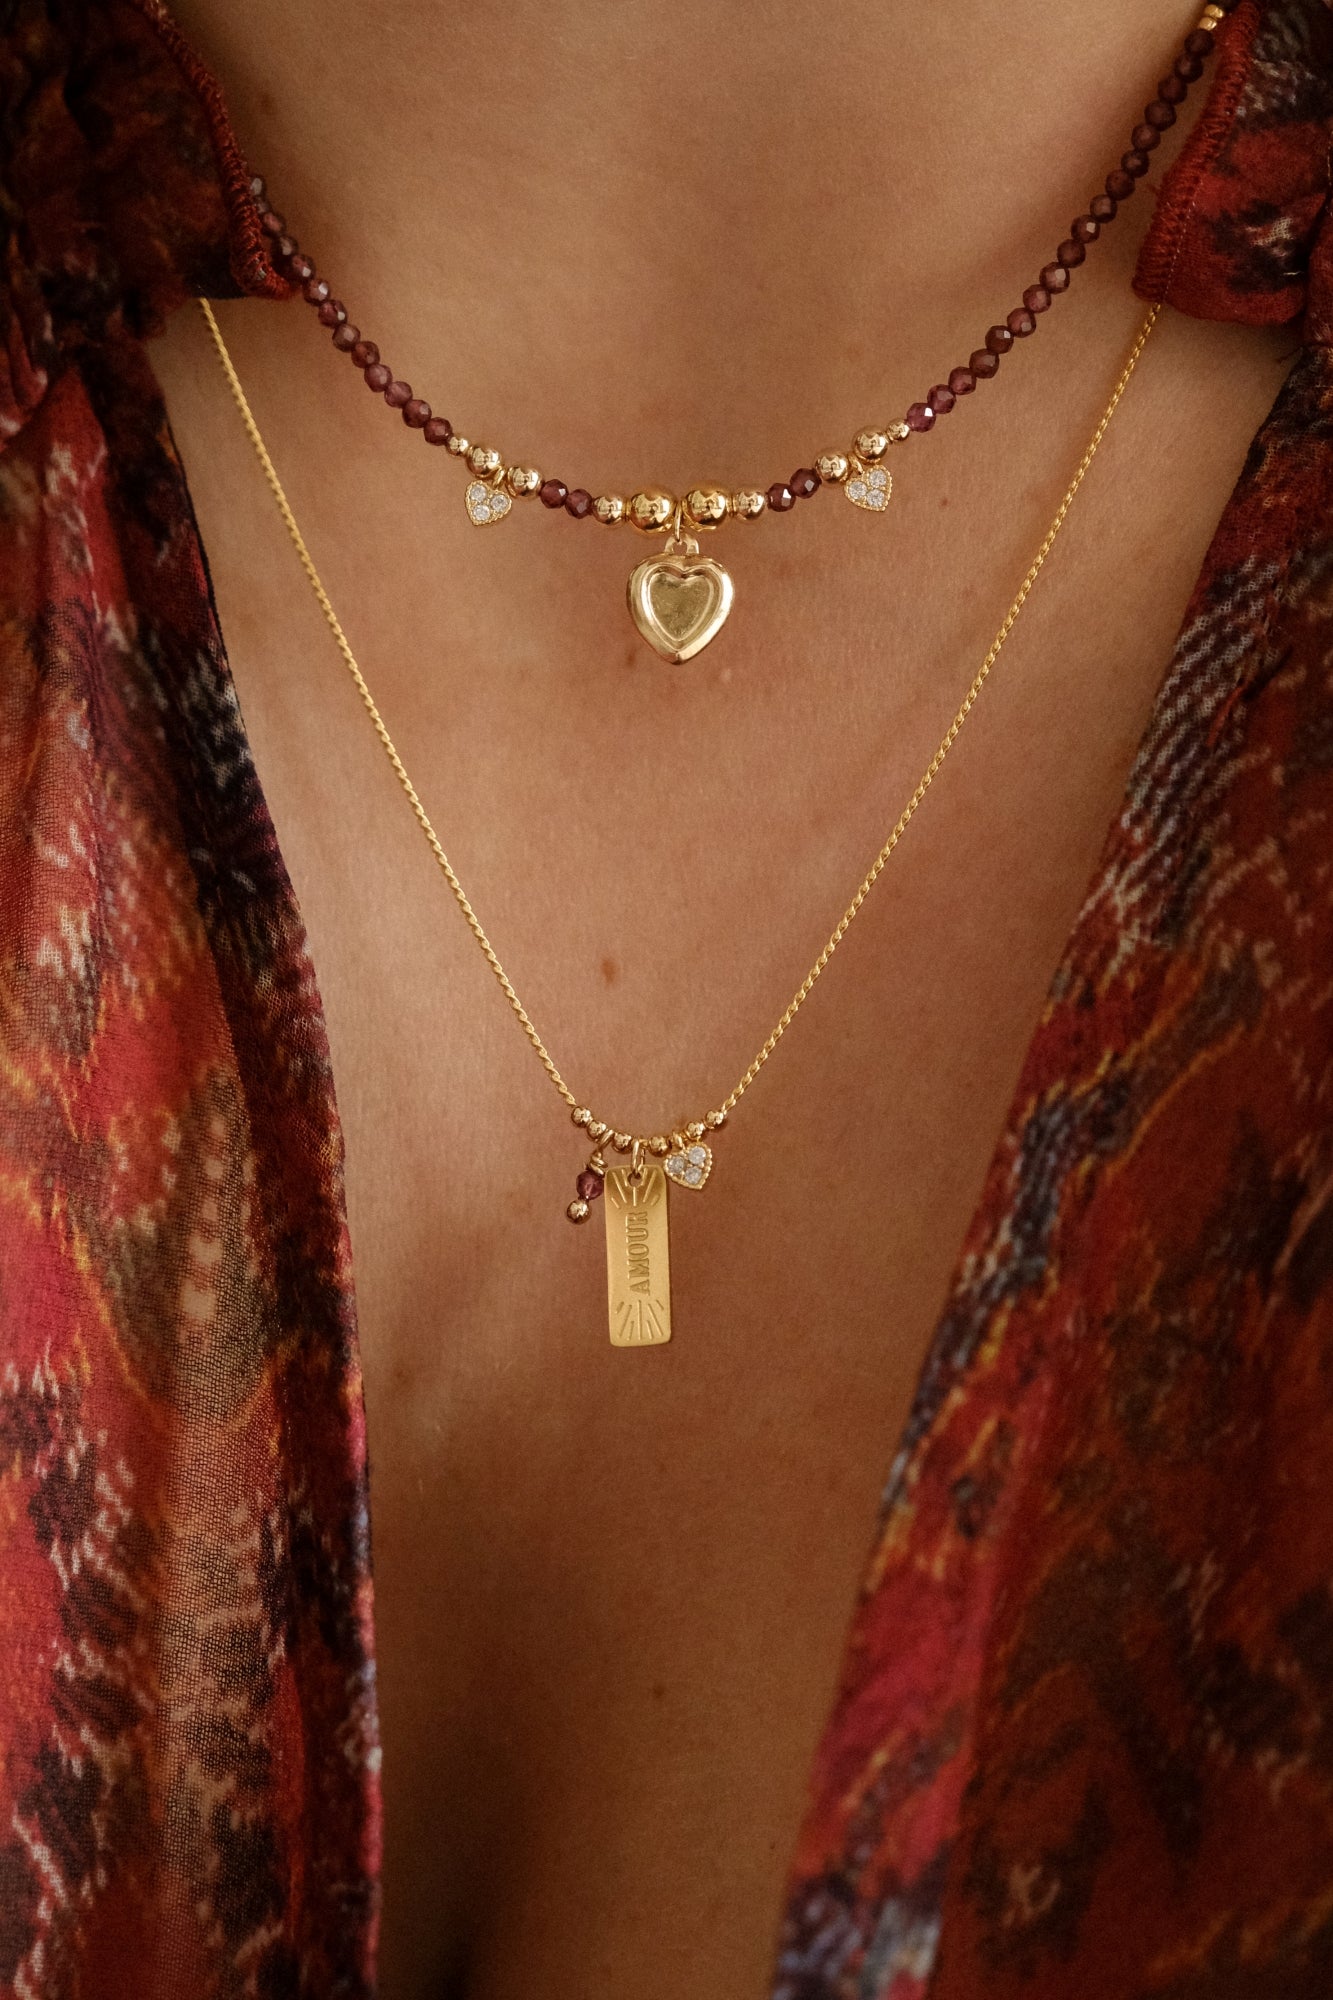 “Montague” necklace